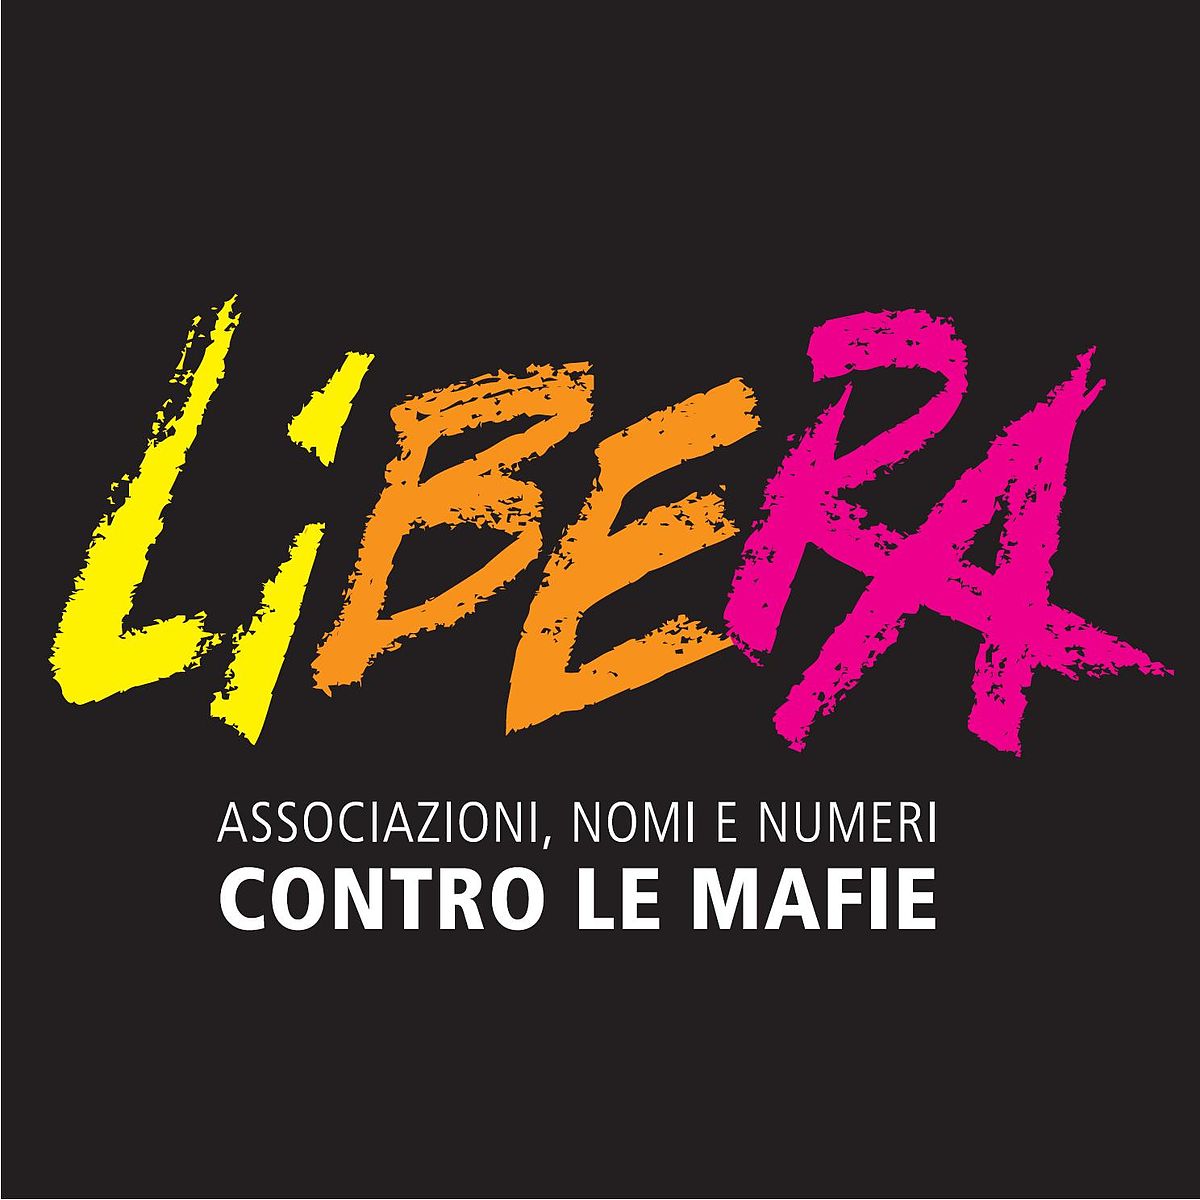 Roma: Libera “Raccontiamo il bene”, riutilizzo sociale di beni confiscati, 991 soggetti diversi in 359 comuni impegnati